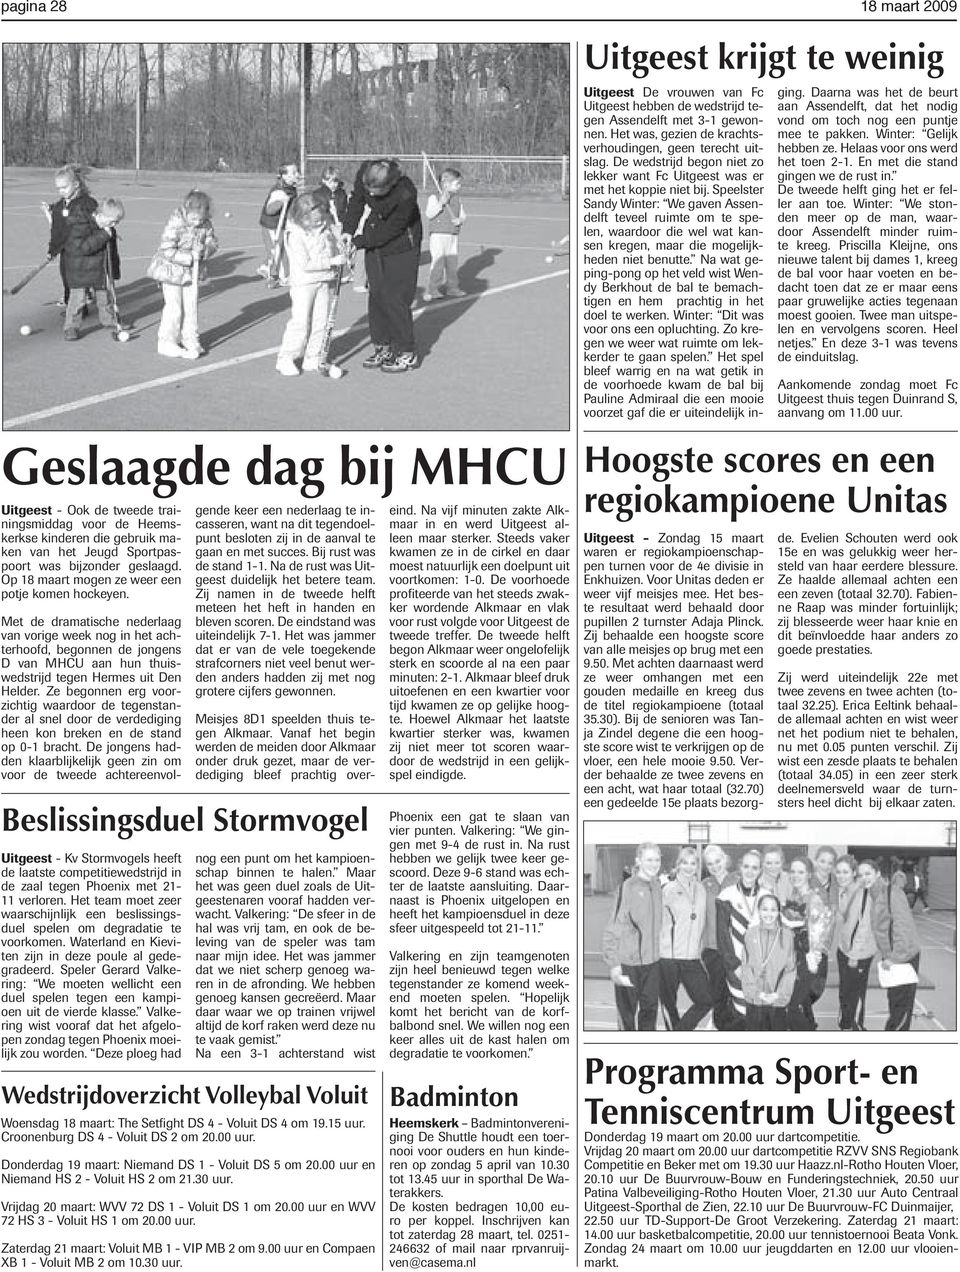 Met de dramatische nederlaag van vorige week nog in het achterhoofd, begonnen de jongens D van MHCU aan hun thuiswedstrijd tegen Hermes uit Den Helder.